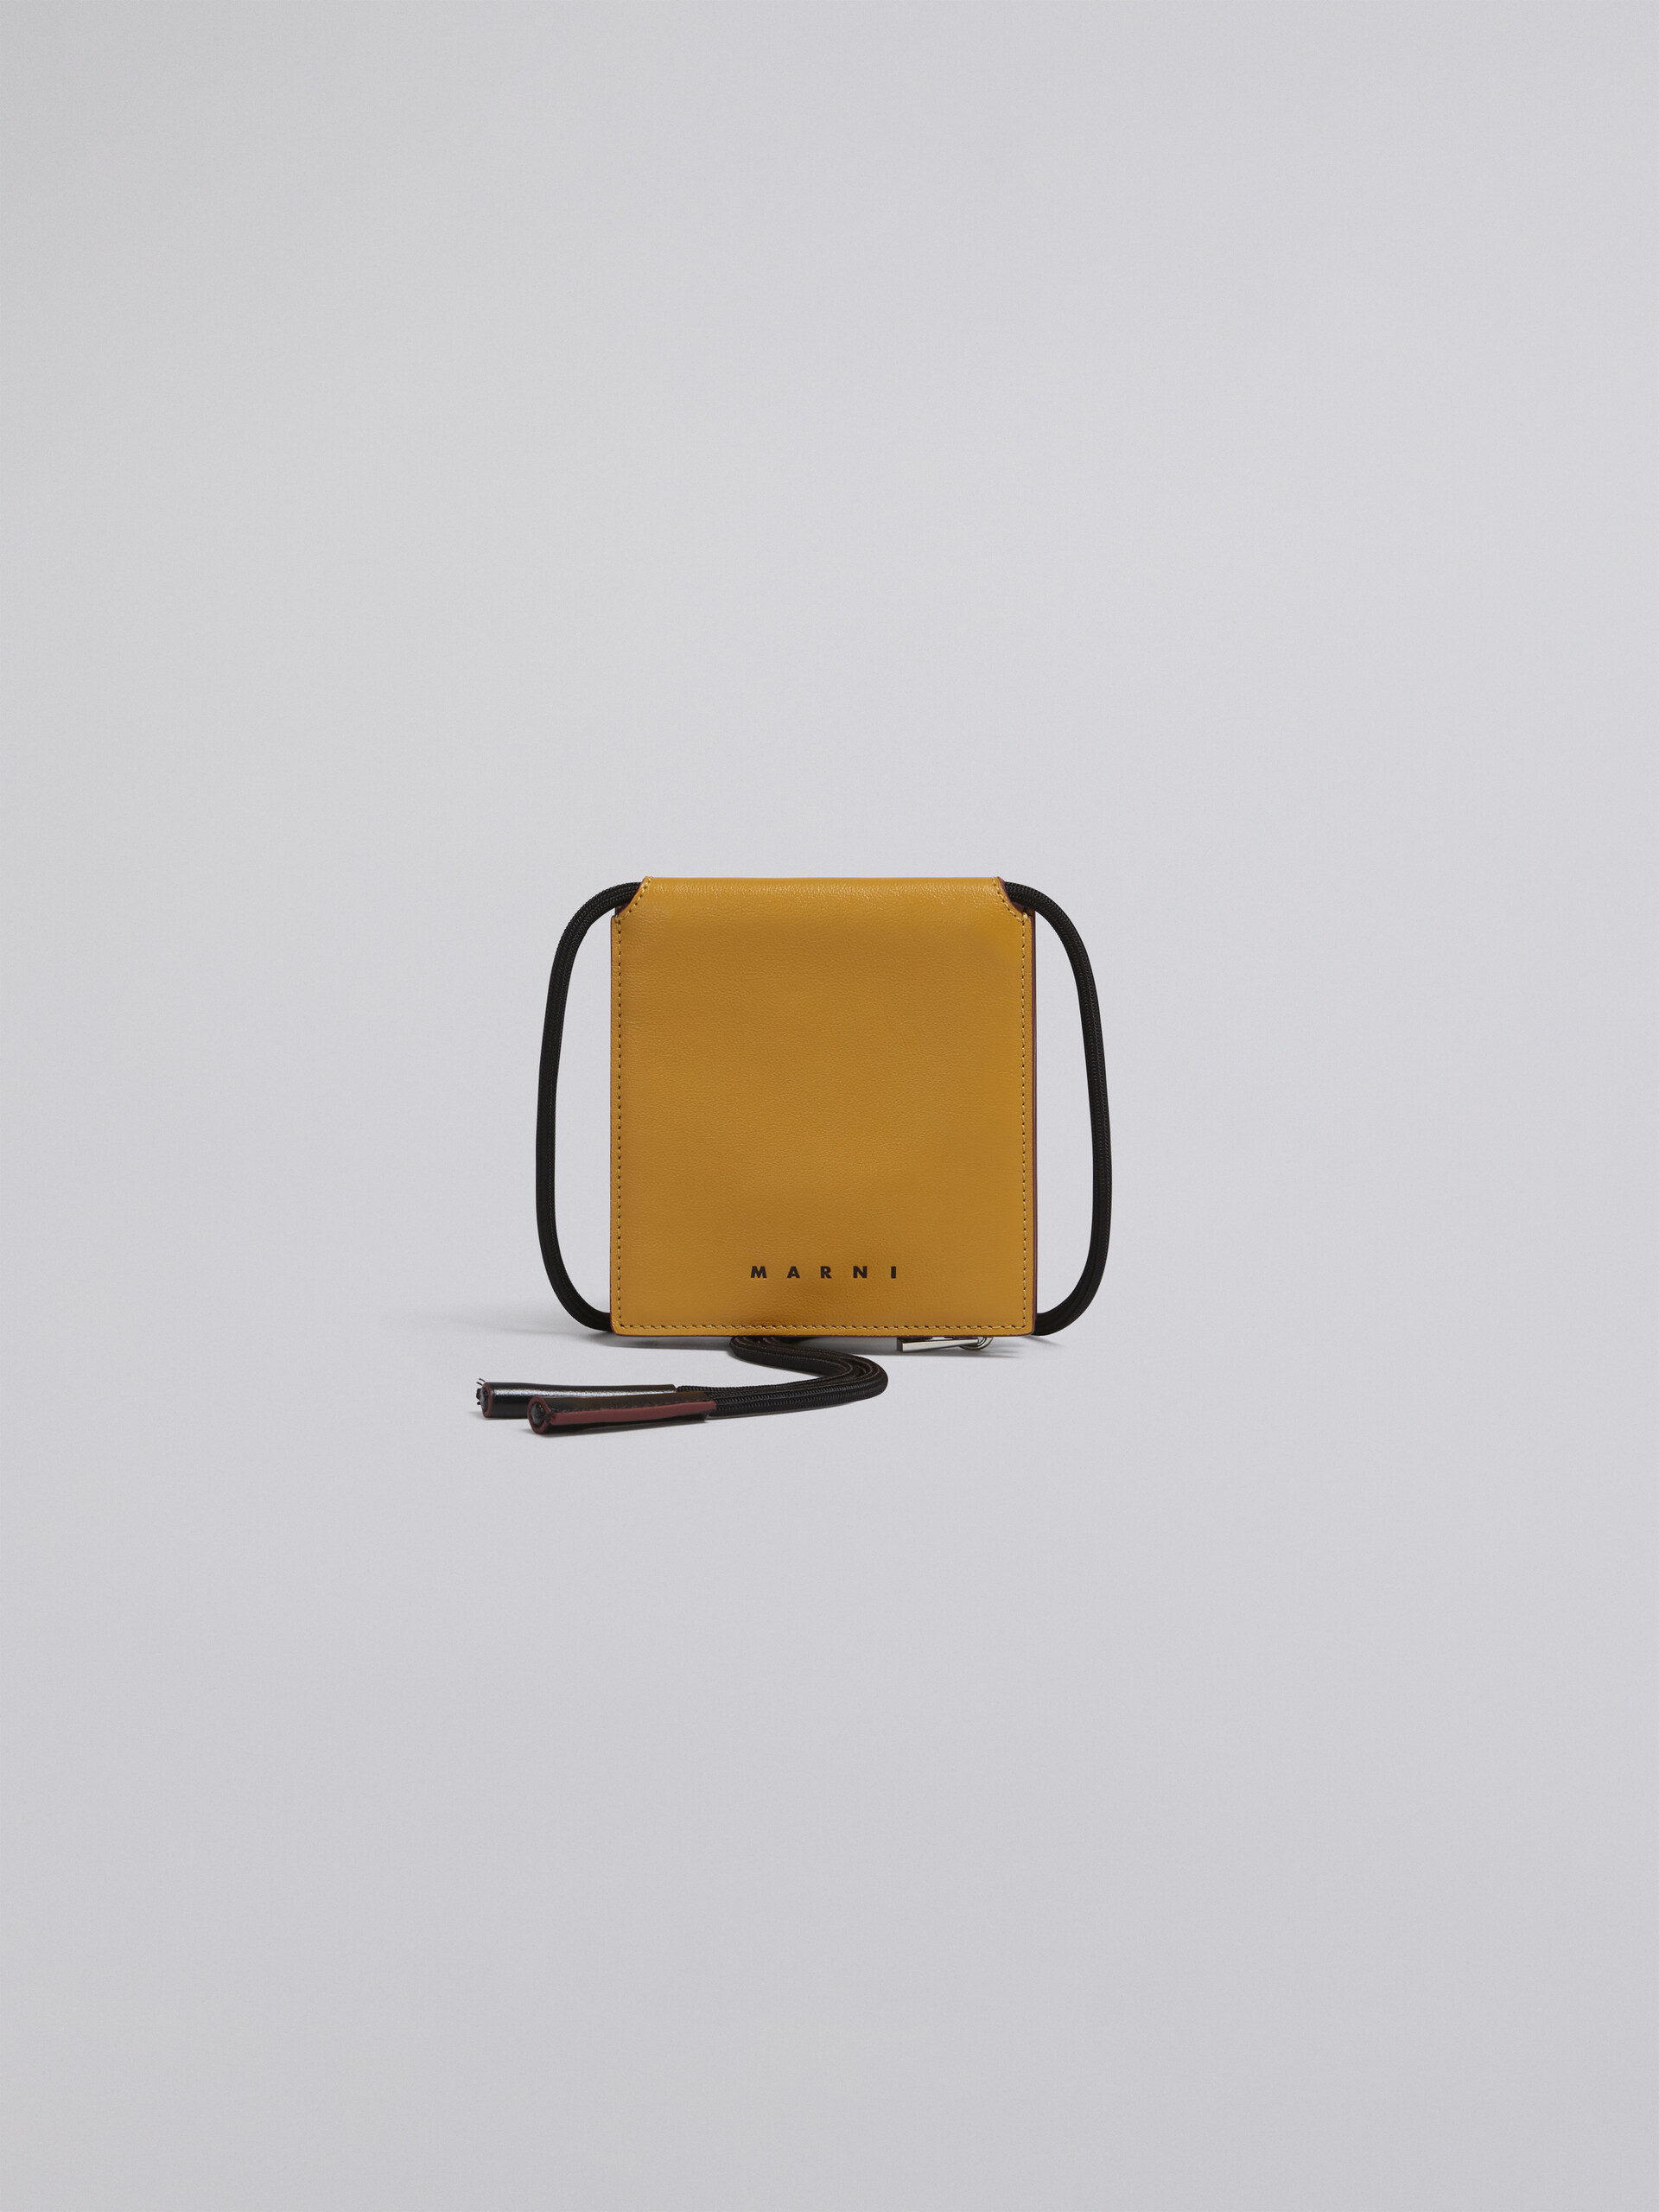 Portafoglio MUSEO bi-fold in vitello bicolore giallo e nero - Portafogli - Image 6